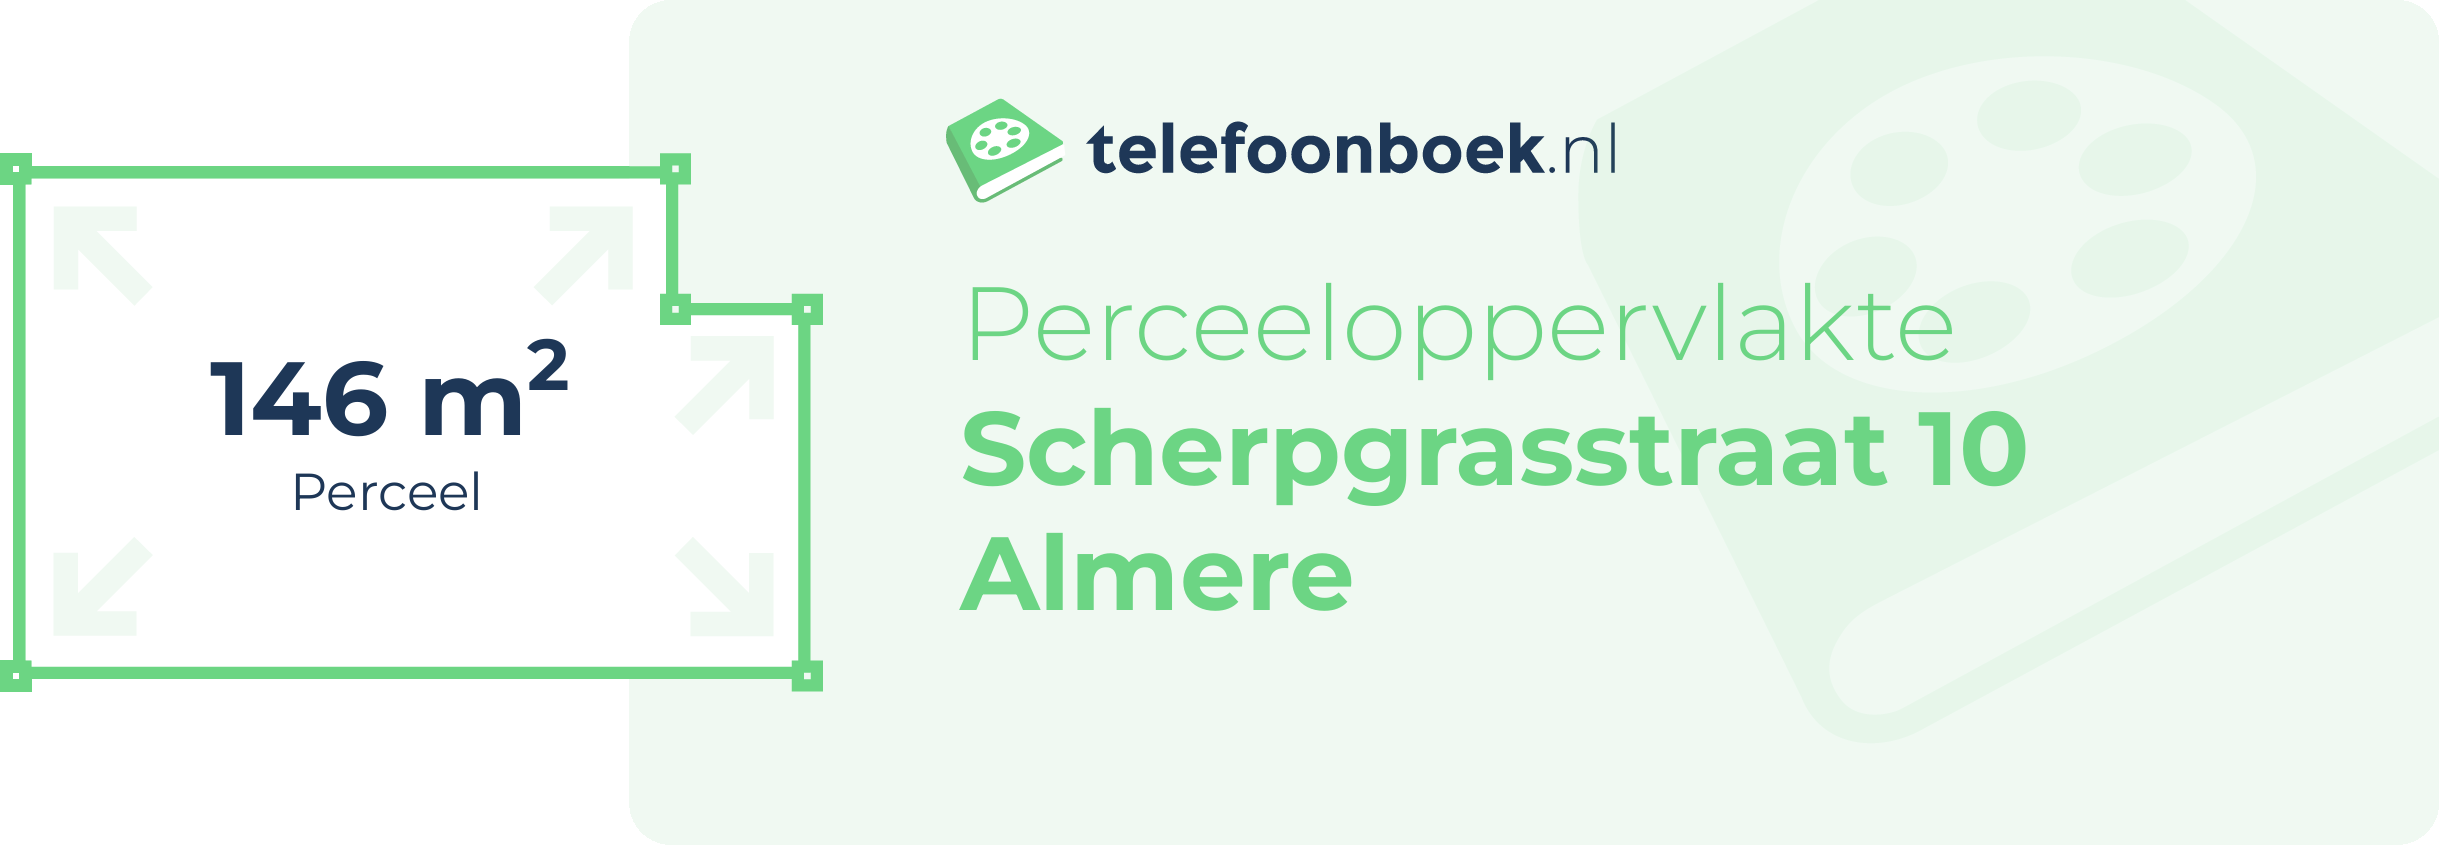 Perceeloppervlakte Scherpgrasstraat 10 Almere